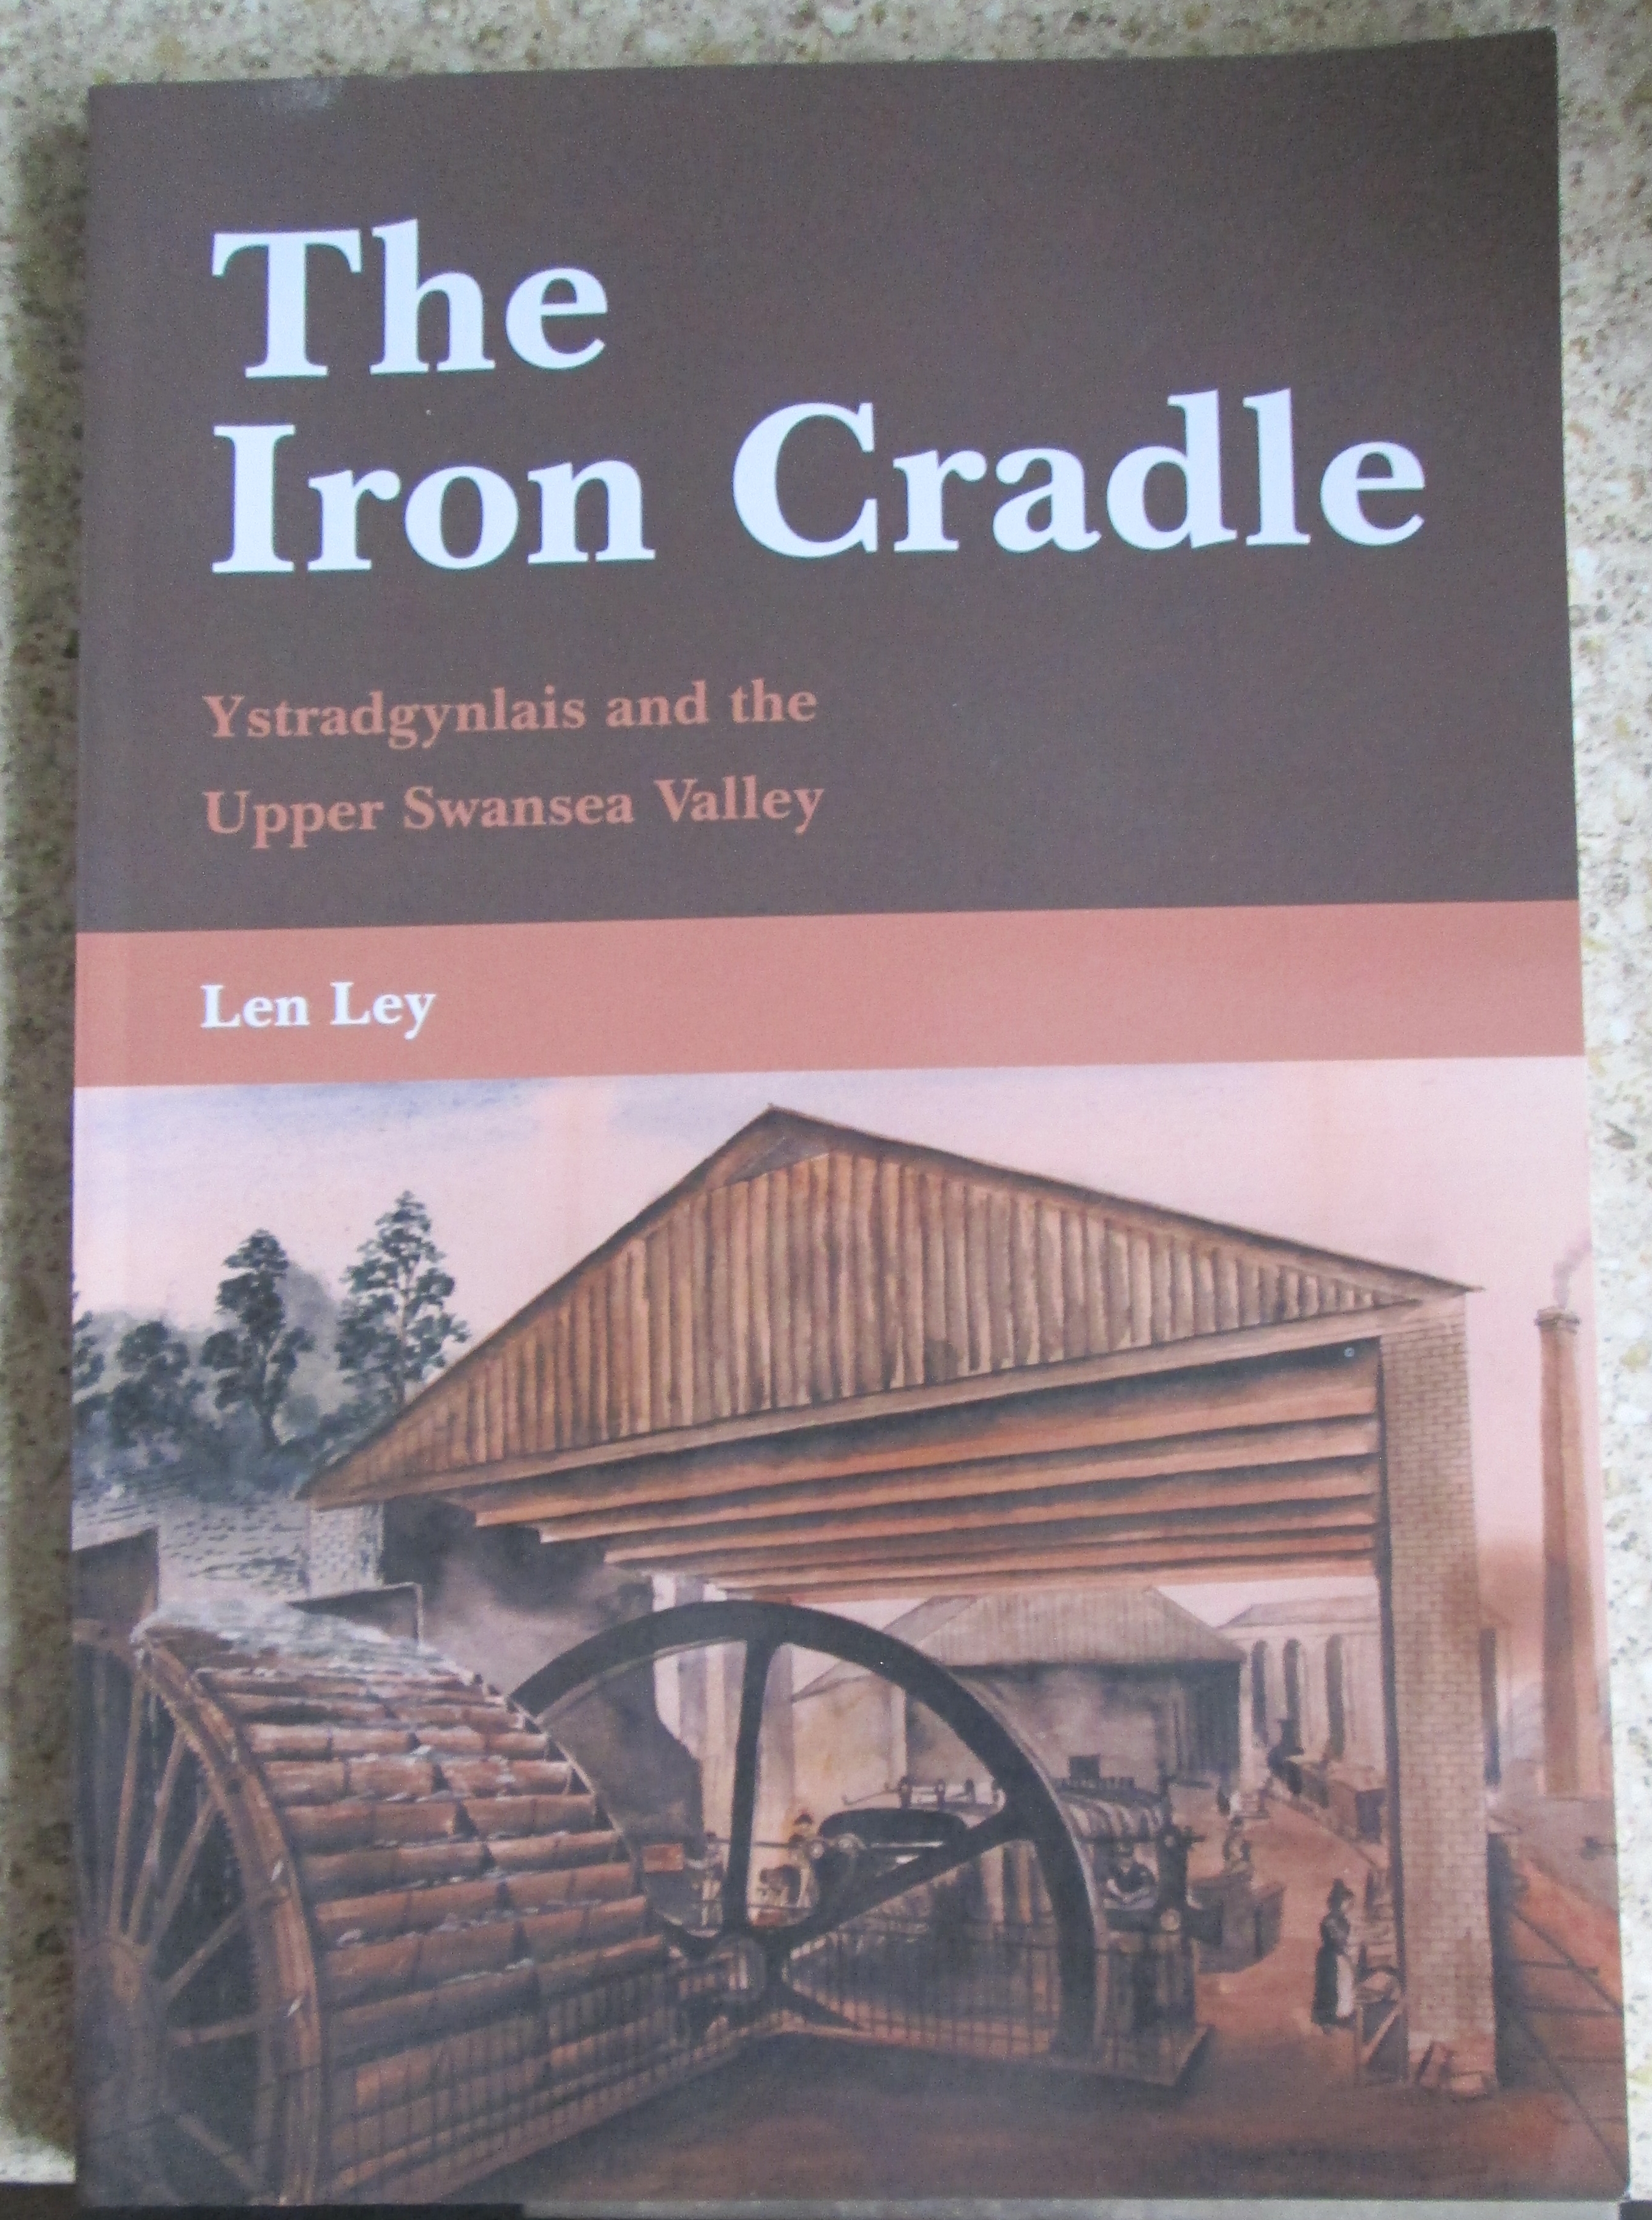 The Iron Cradle